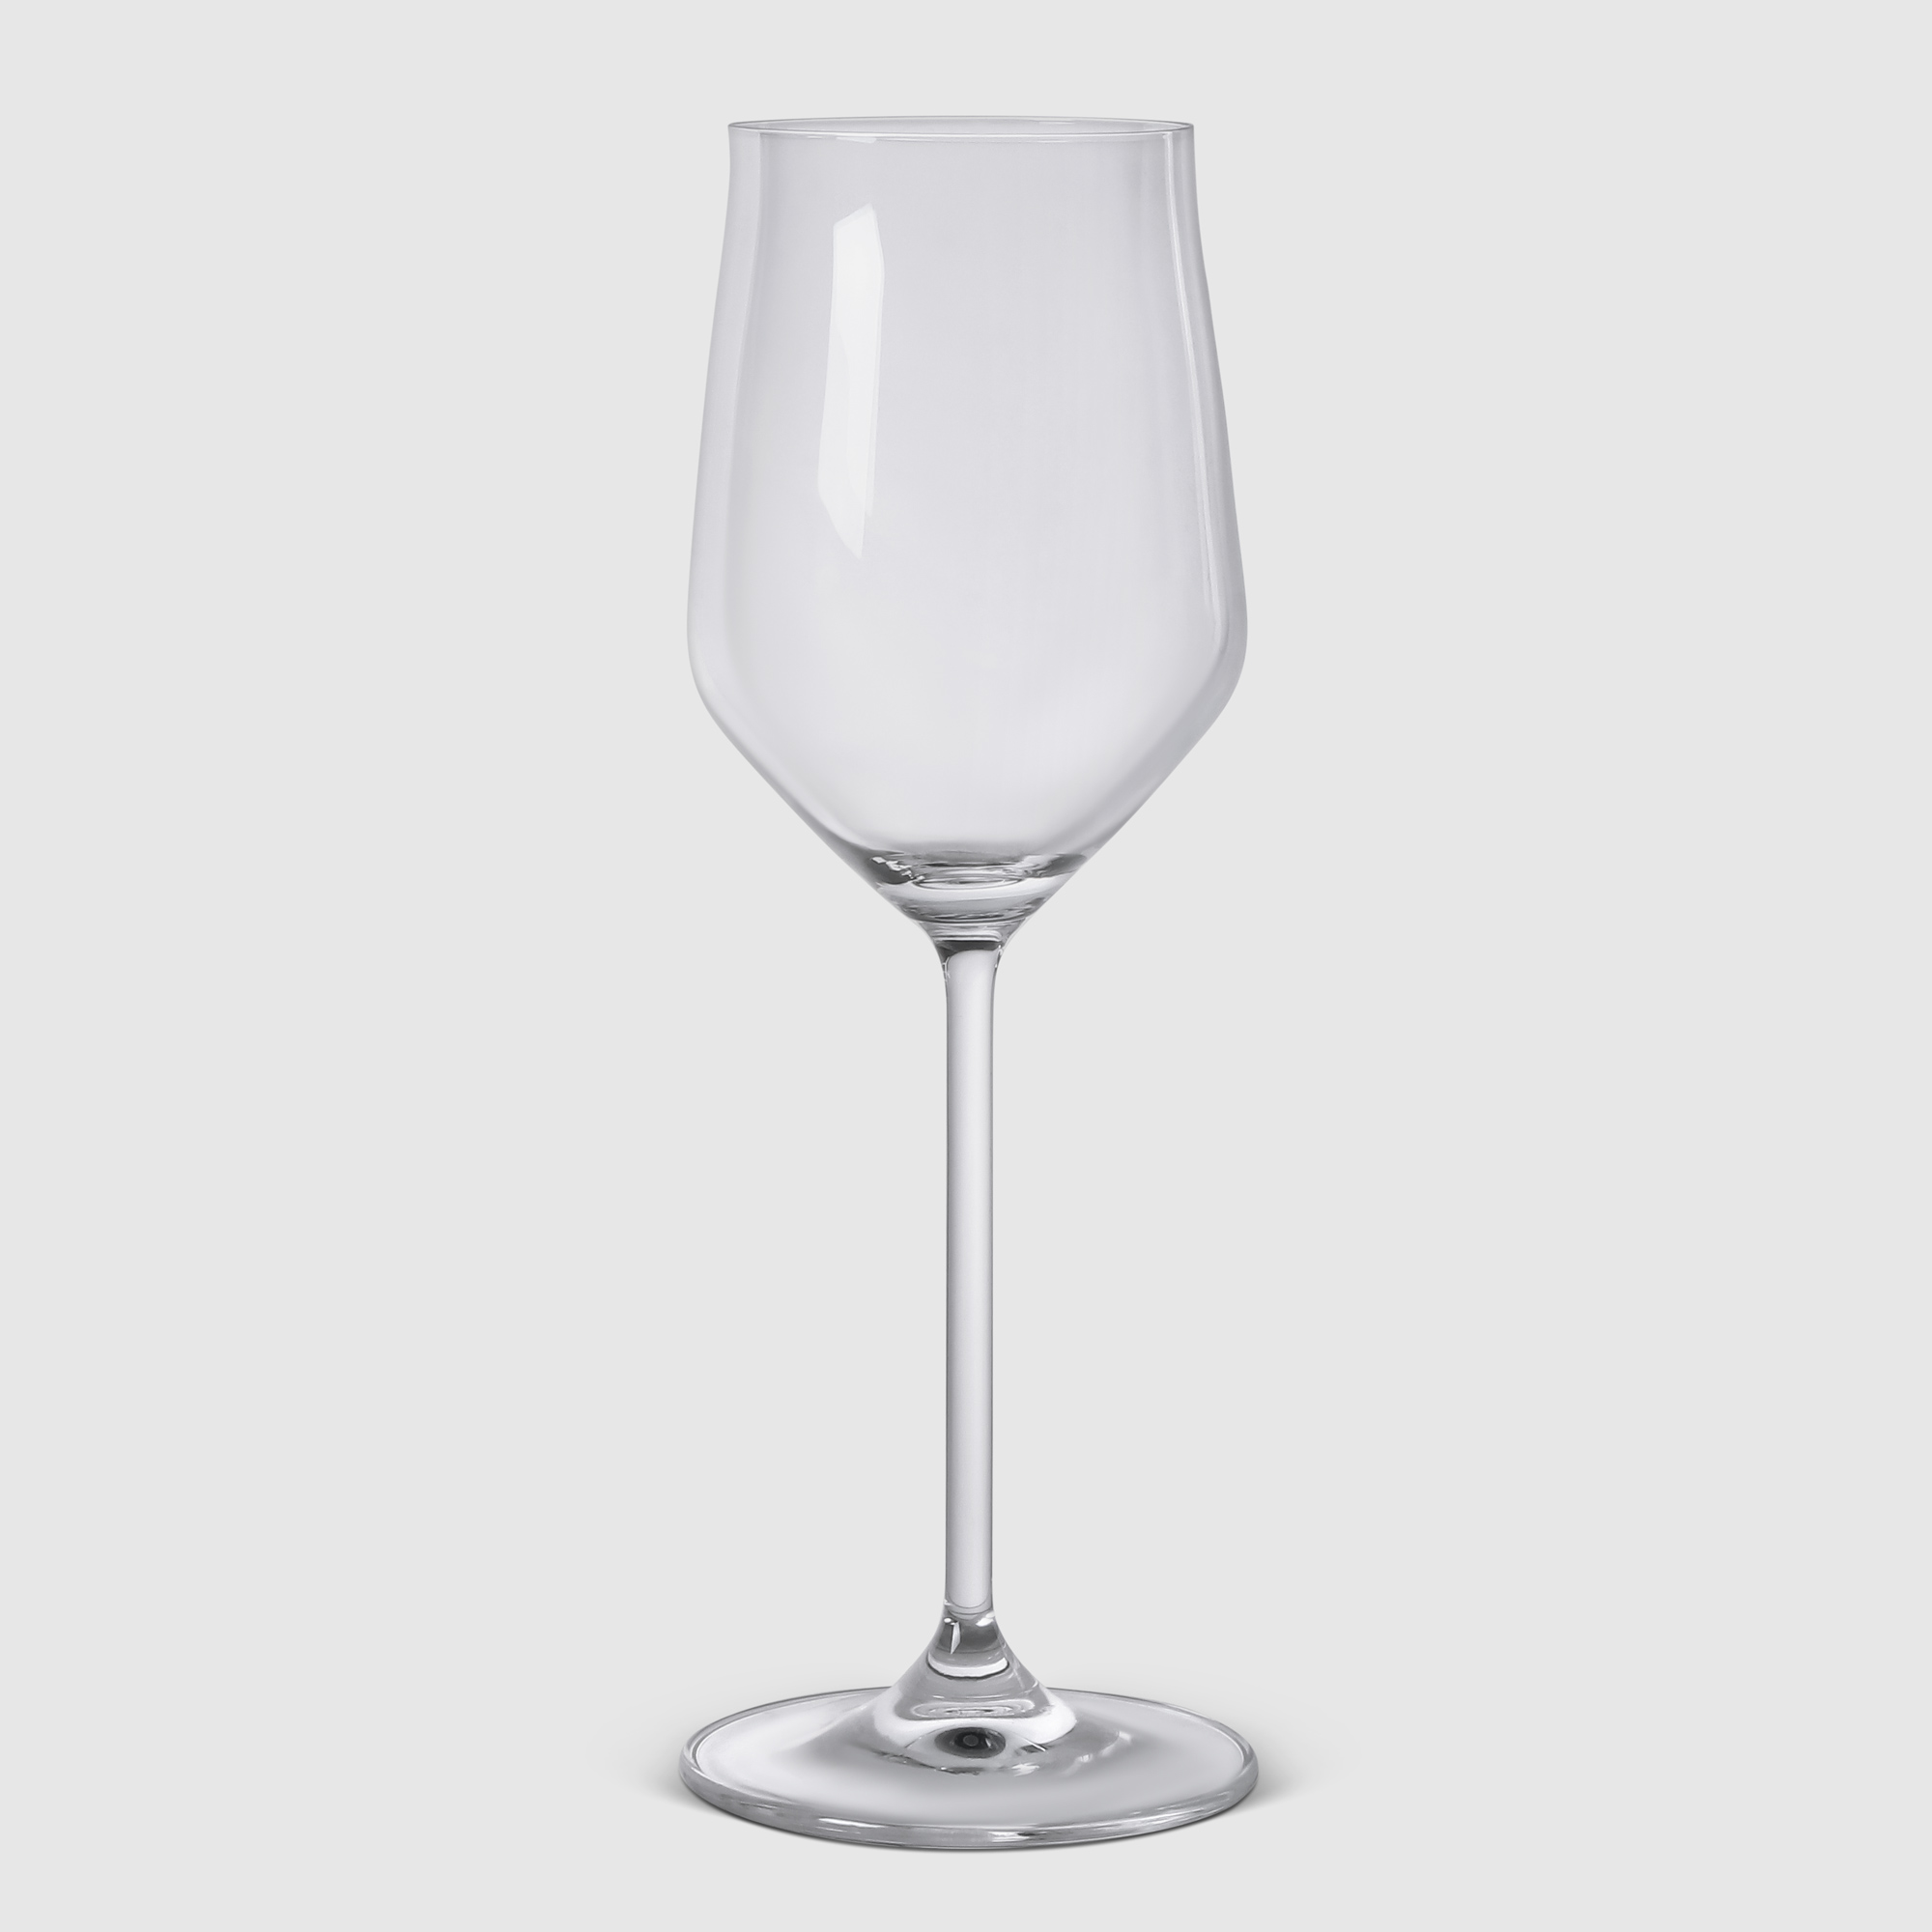 Бокал Wittkemper 10296700 для белого вина бокал для вина crystal bohemia рюмка виктория 170мл вино прессхрусталь 990 10900 0 44600 170